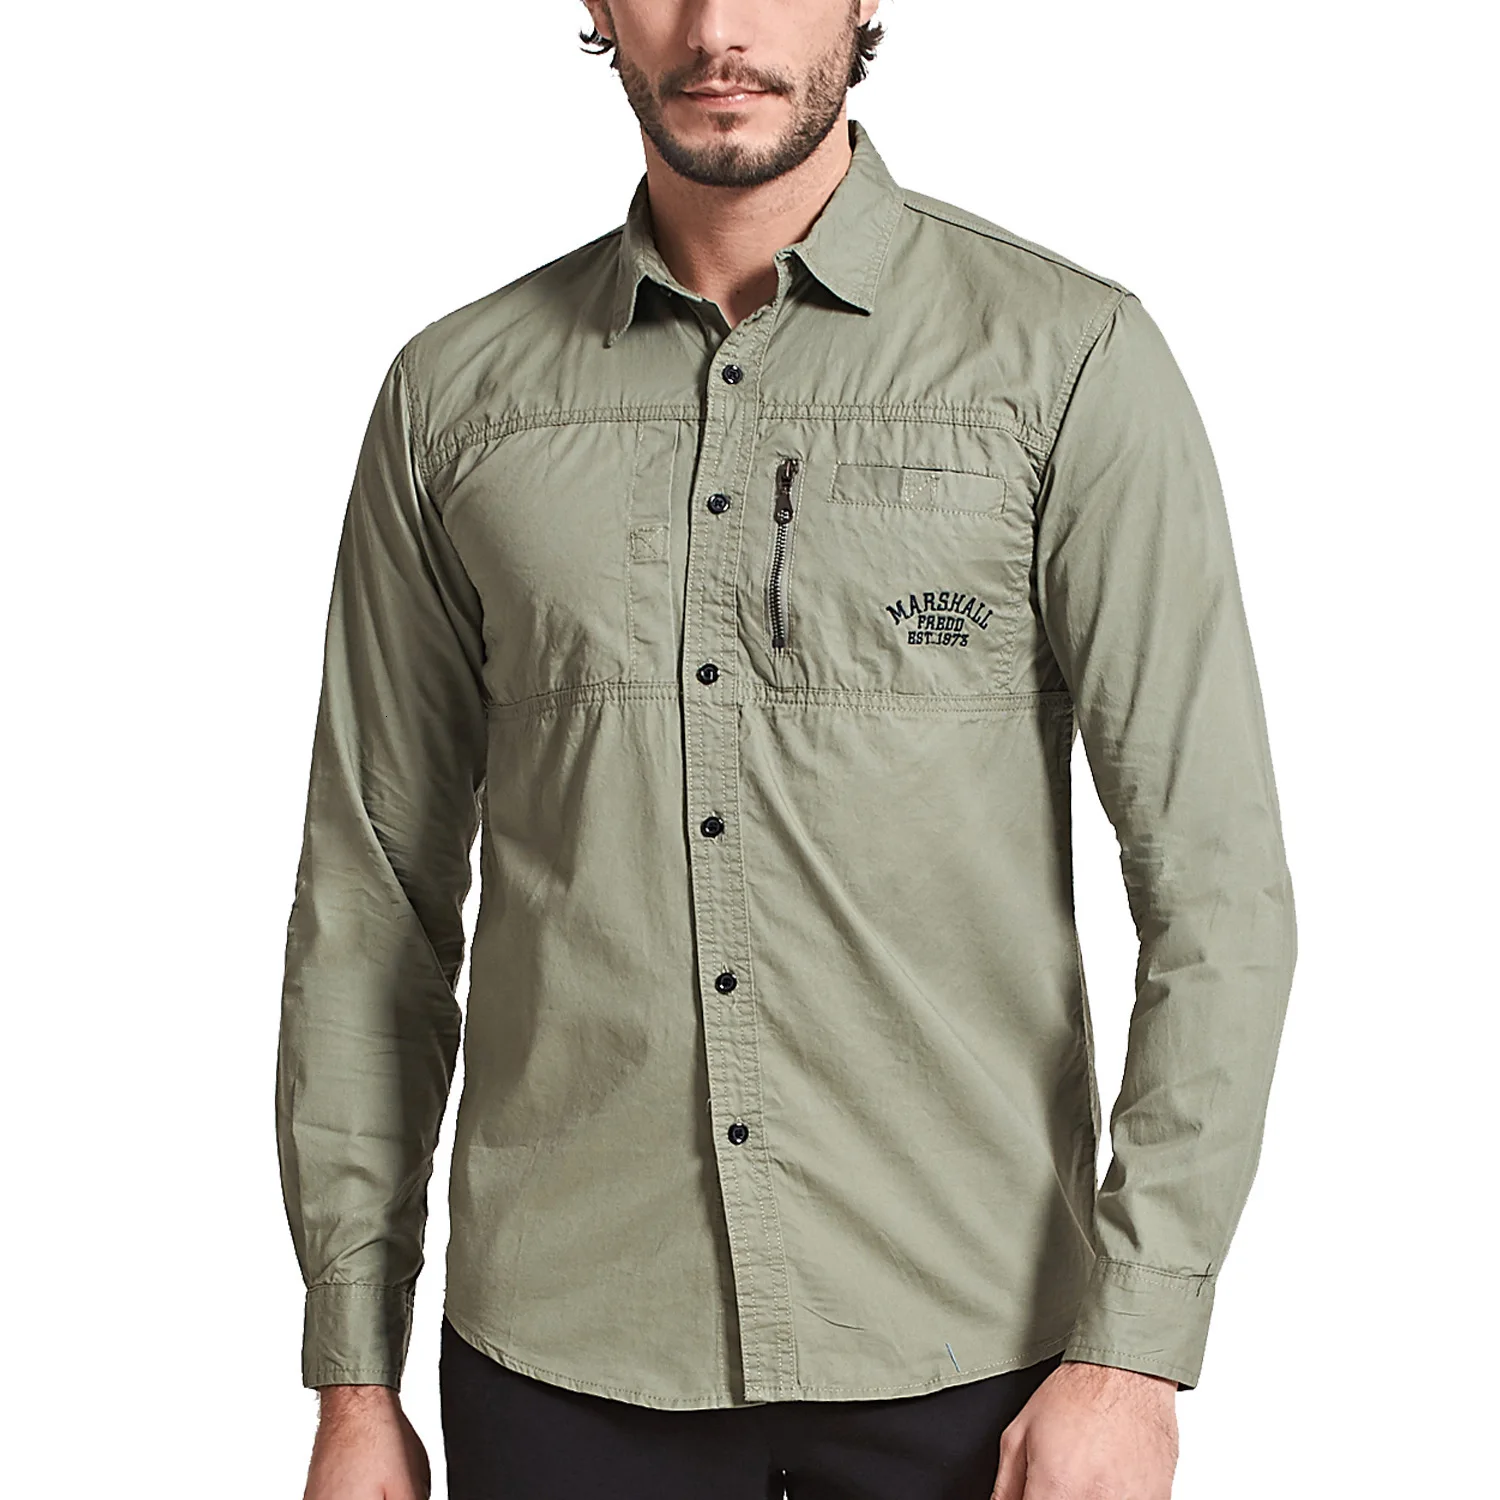 Will Code мужская одежда с длинным рукавом, рубашка на молнии с отворотом, хлопковая рубашка в стиле милитари, рубашка для отдыха, 117